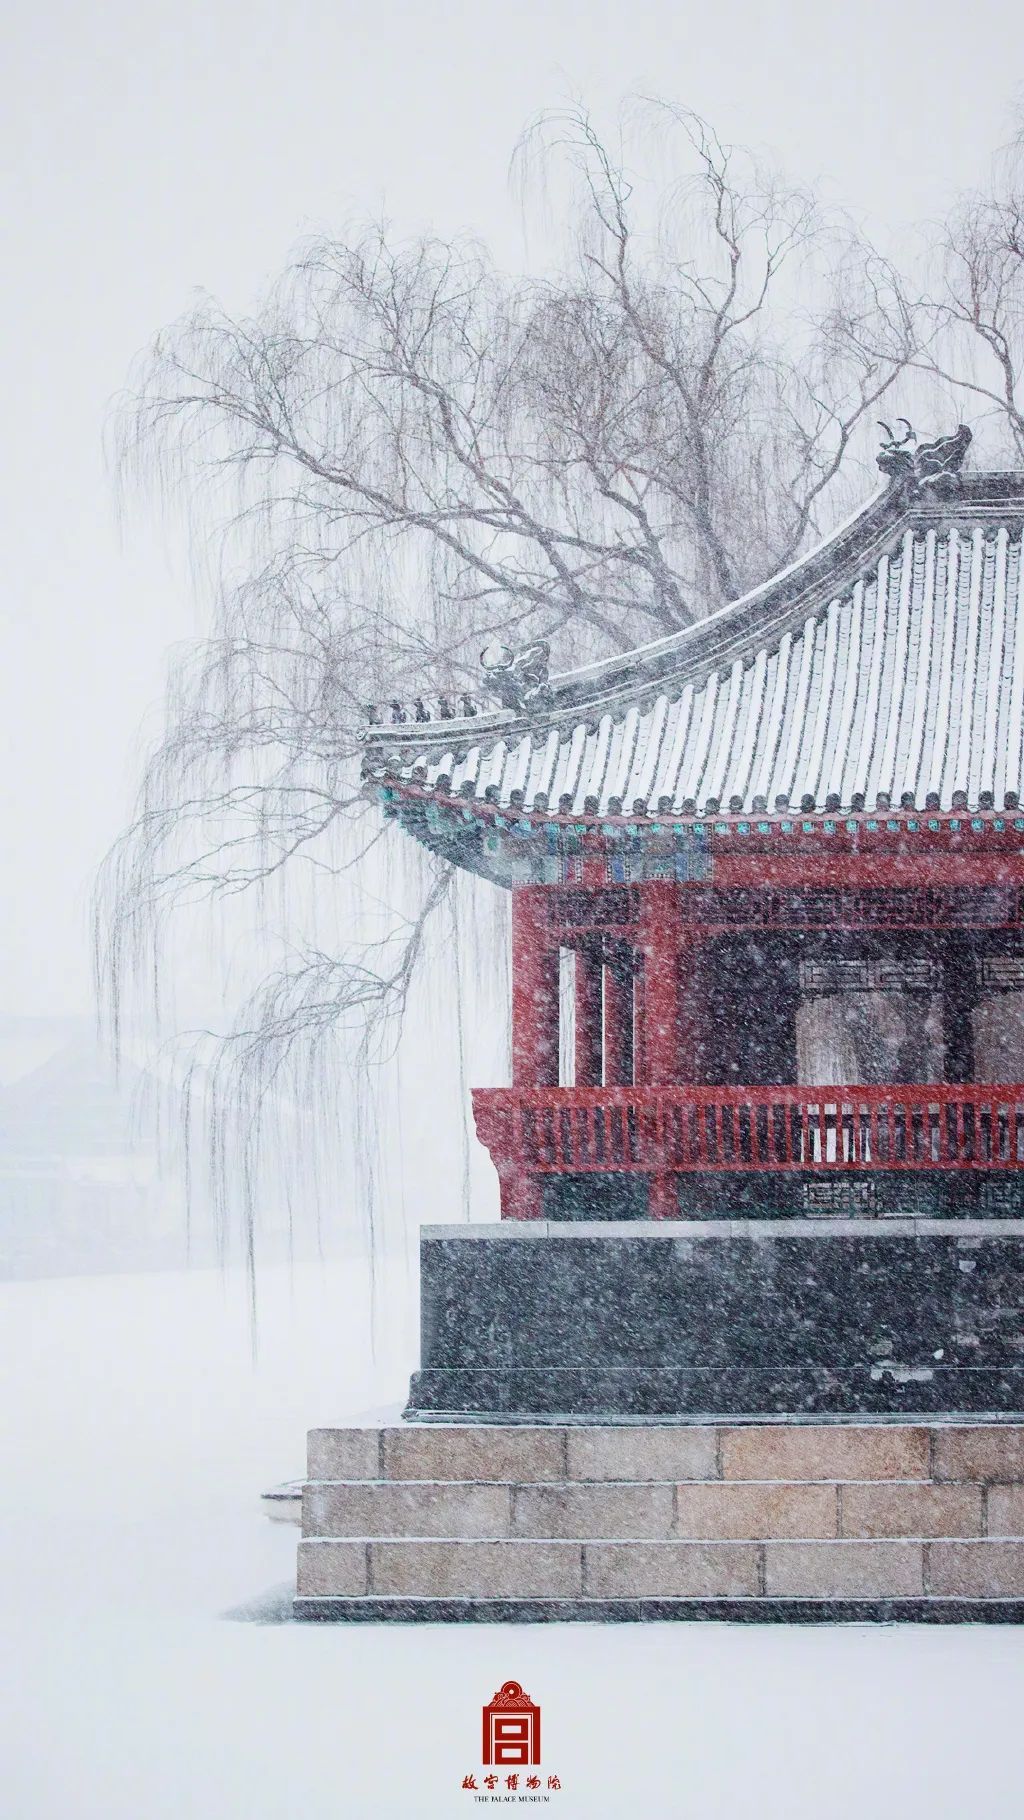 再次领略紫禁城的魅力在大雪纷飞中琉璃世界,白雪红墙上新了故宫的